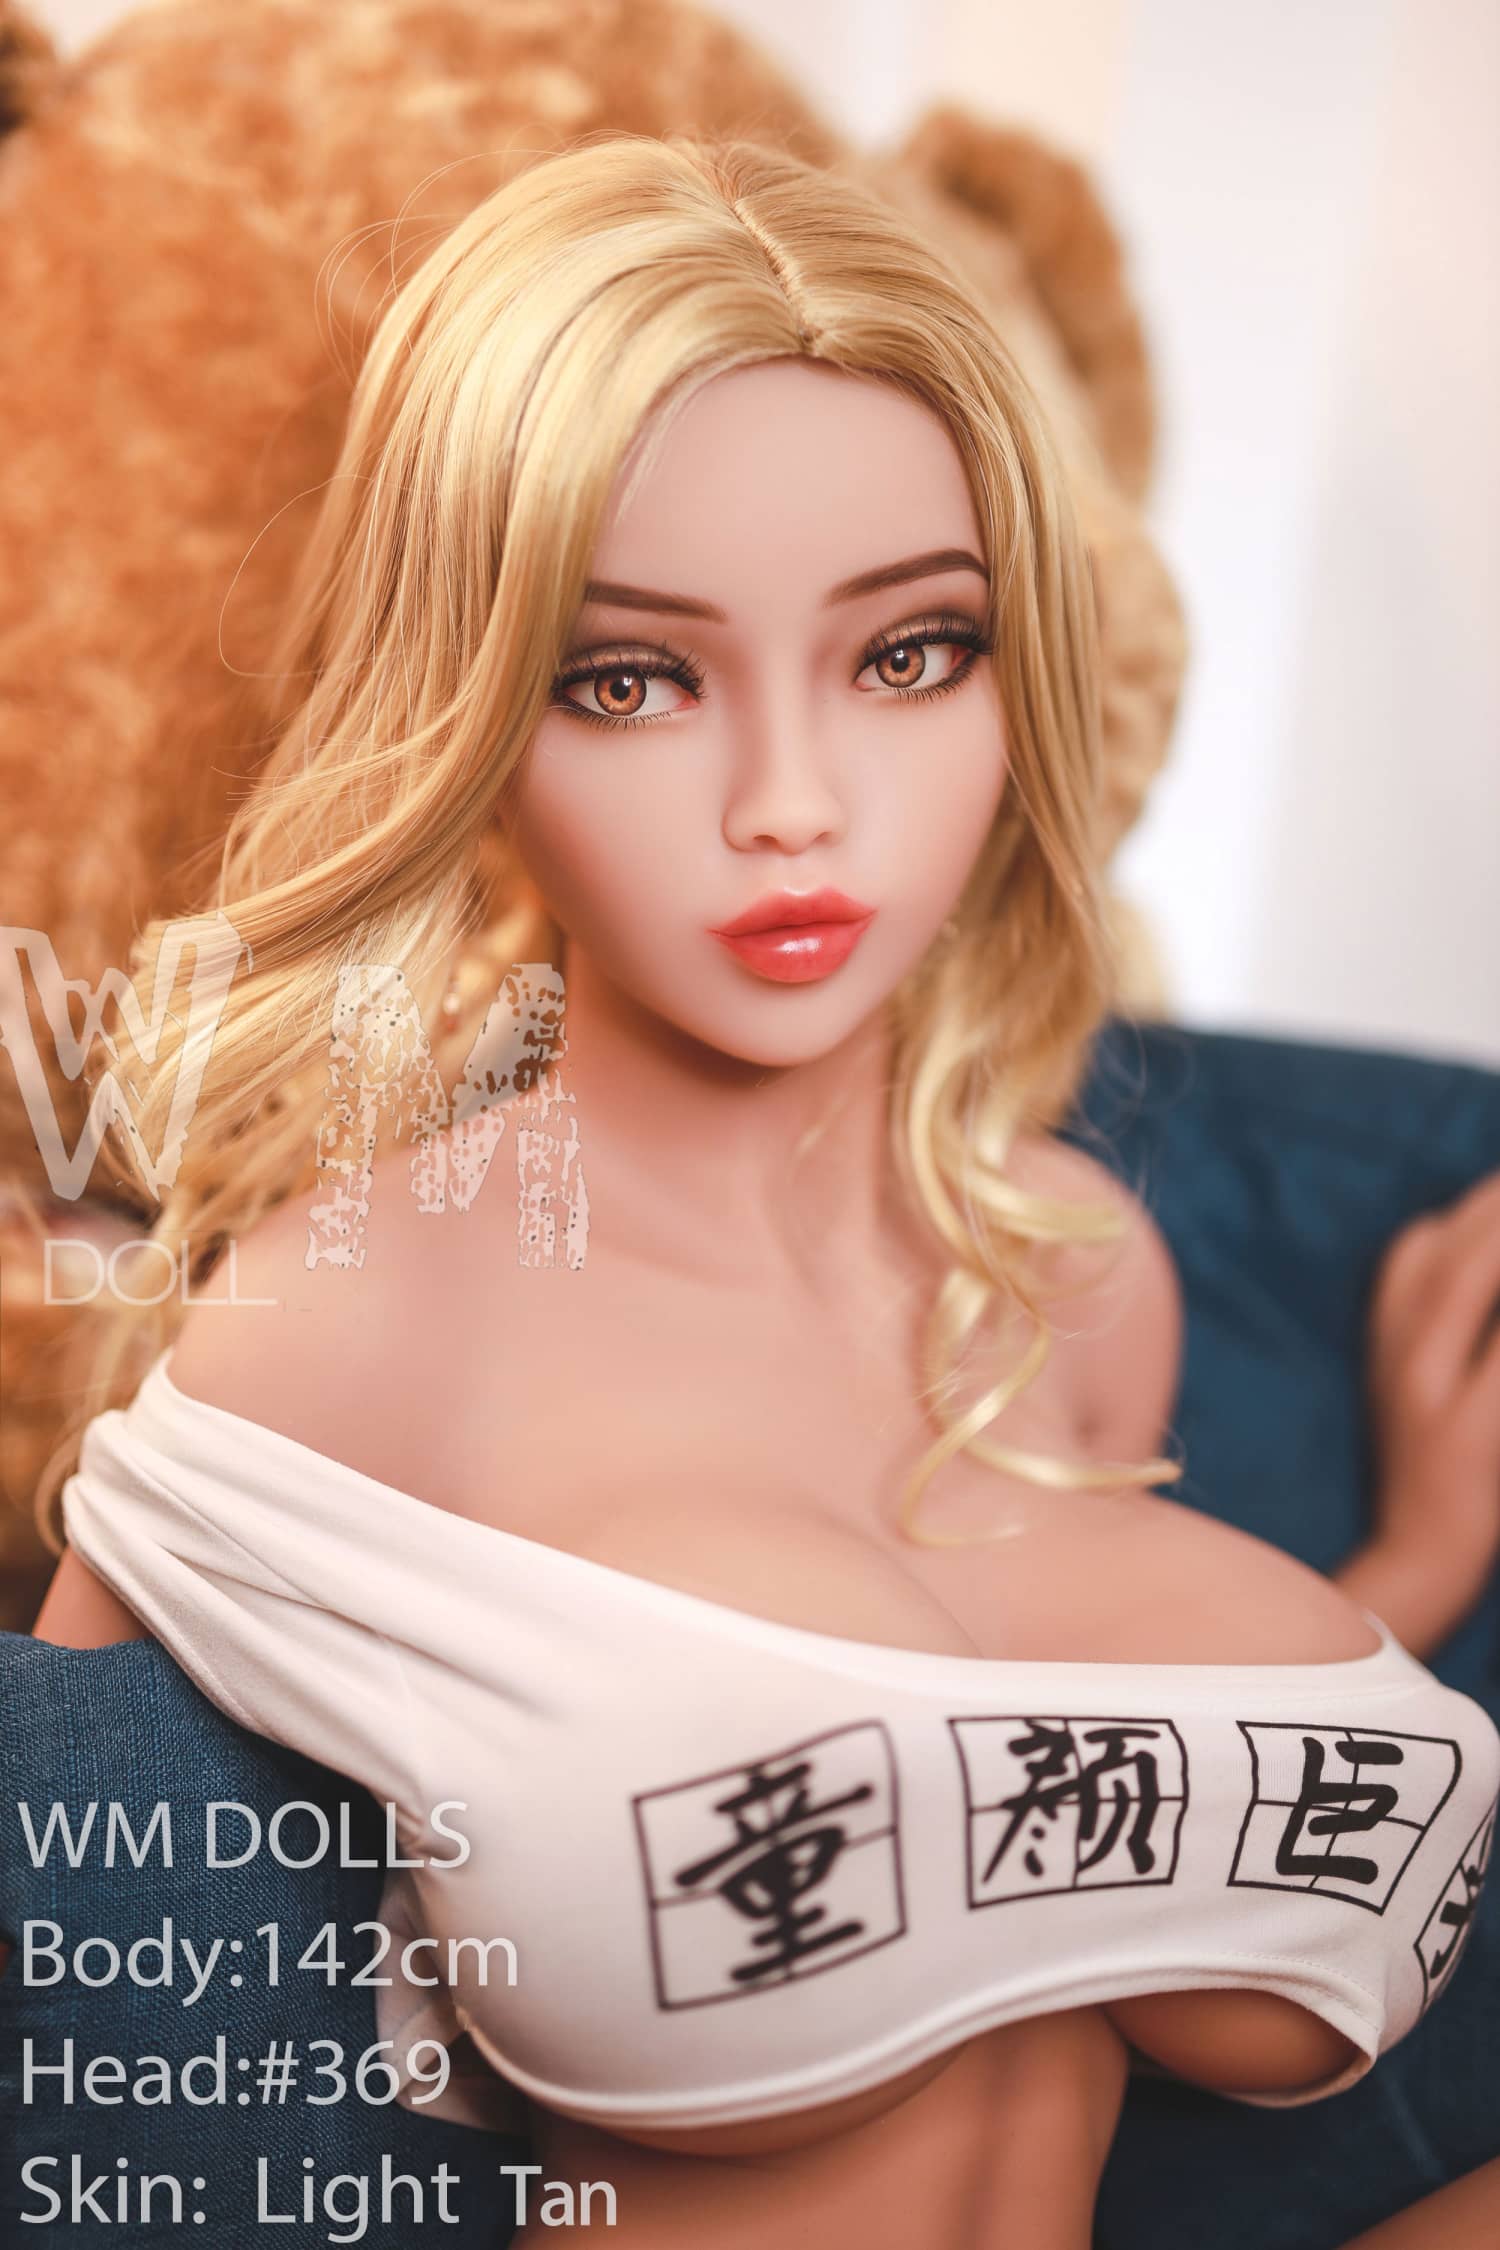 WM Doll 142cm STPE Large Breasts - Evelyn WM DOLL Littlelovedoll